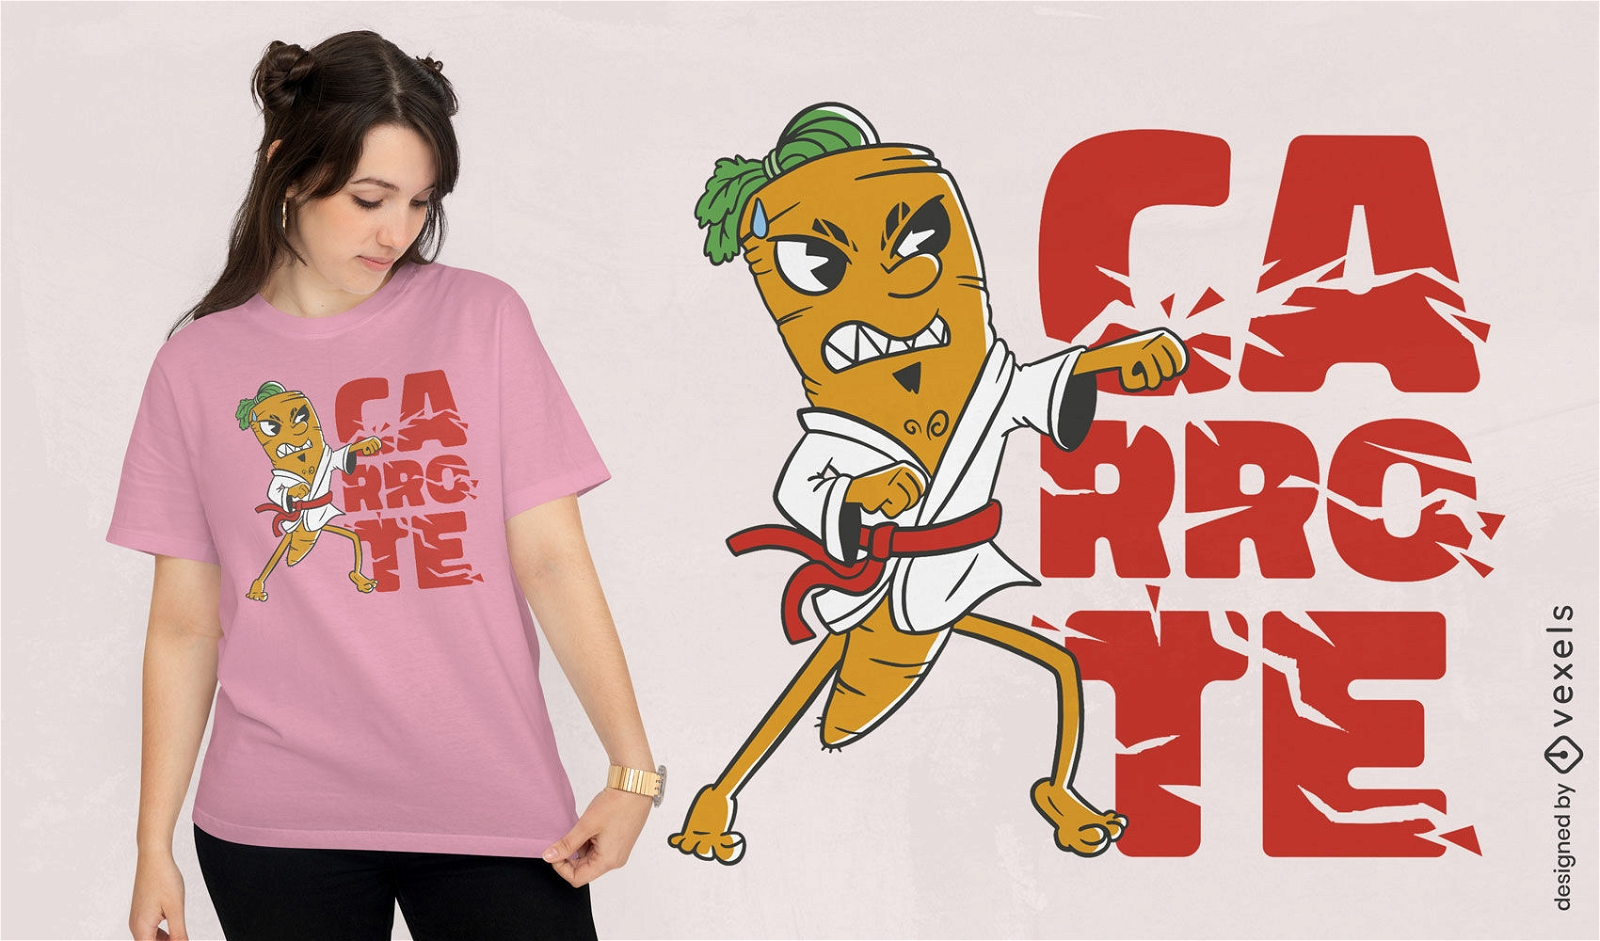 Dise?o de camiseta de personaje de zanahoria de karate.